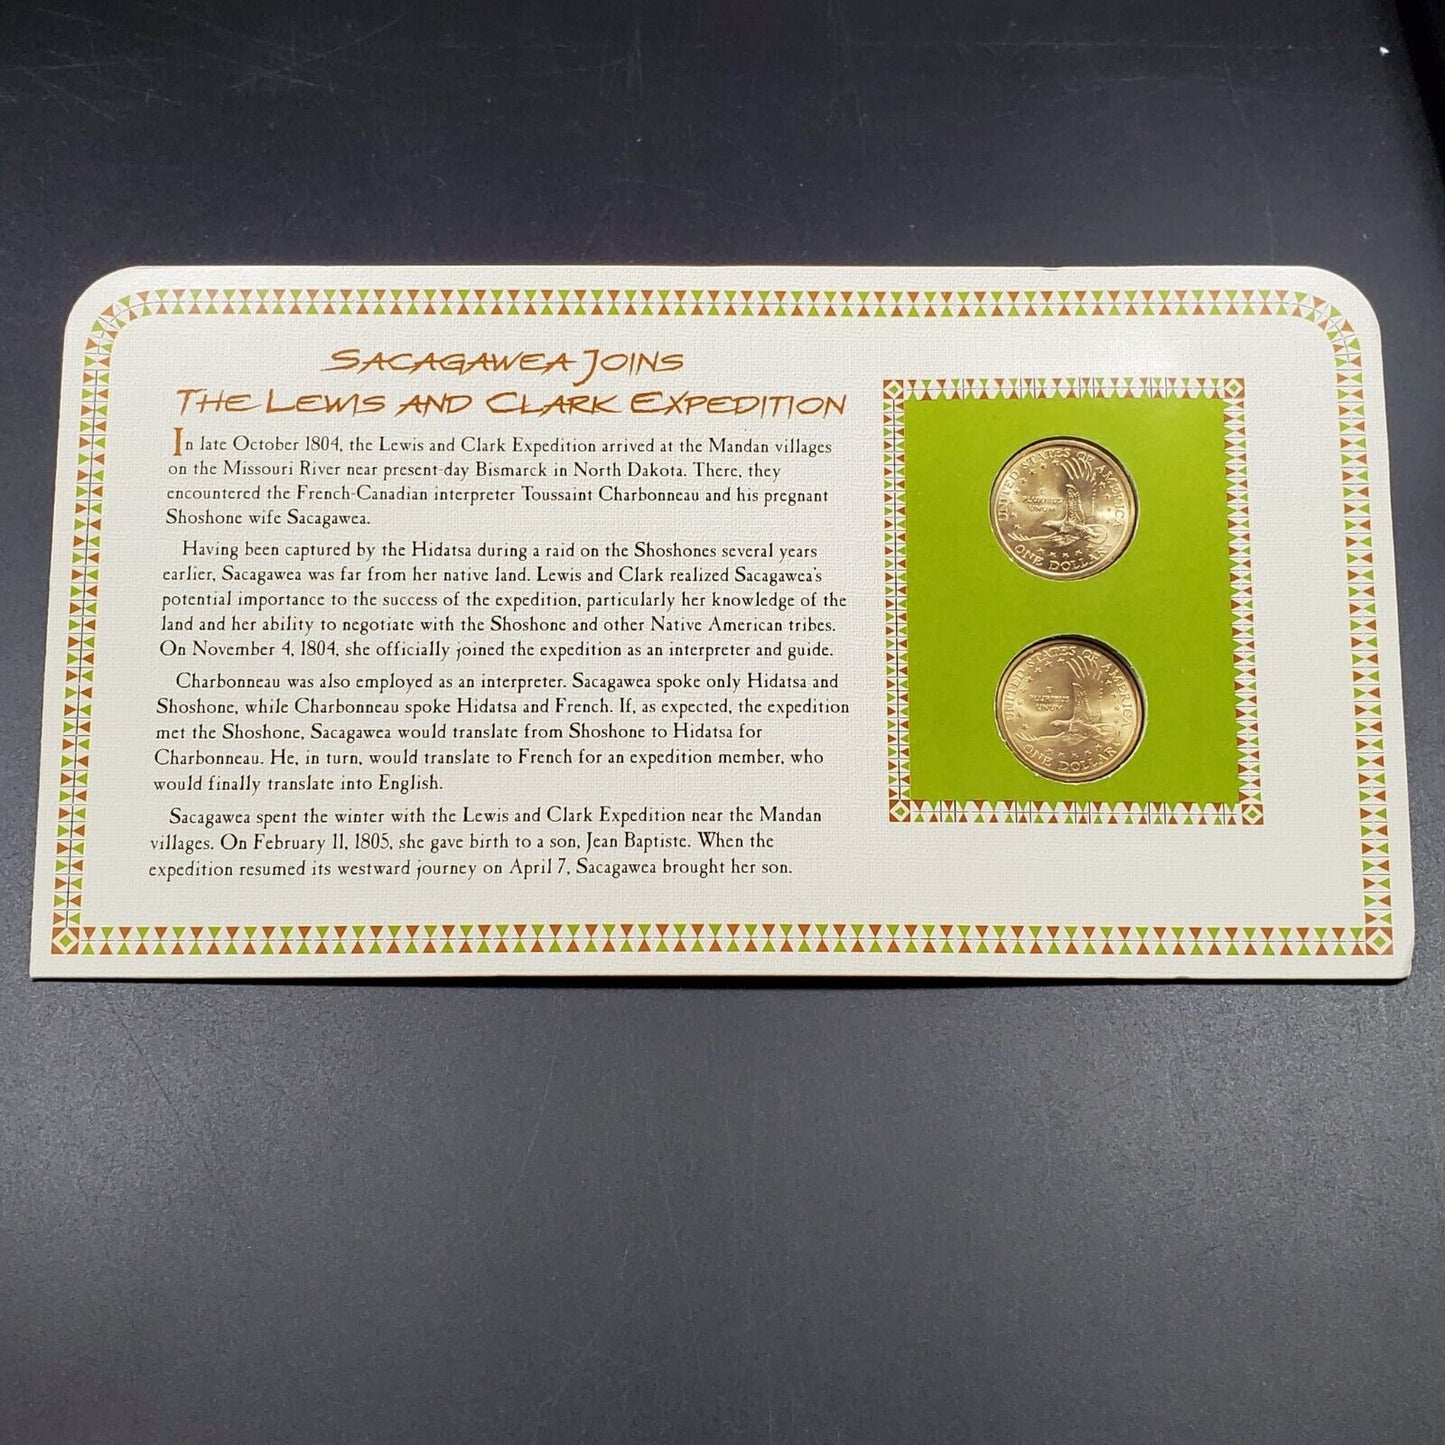 2001 P & D Sacagawea Golden Dollars & 1954 USA 3C Stamp Uncirculated Sheet